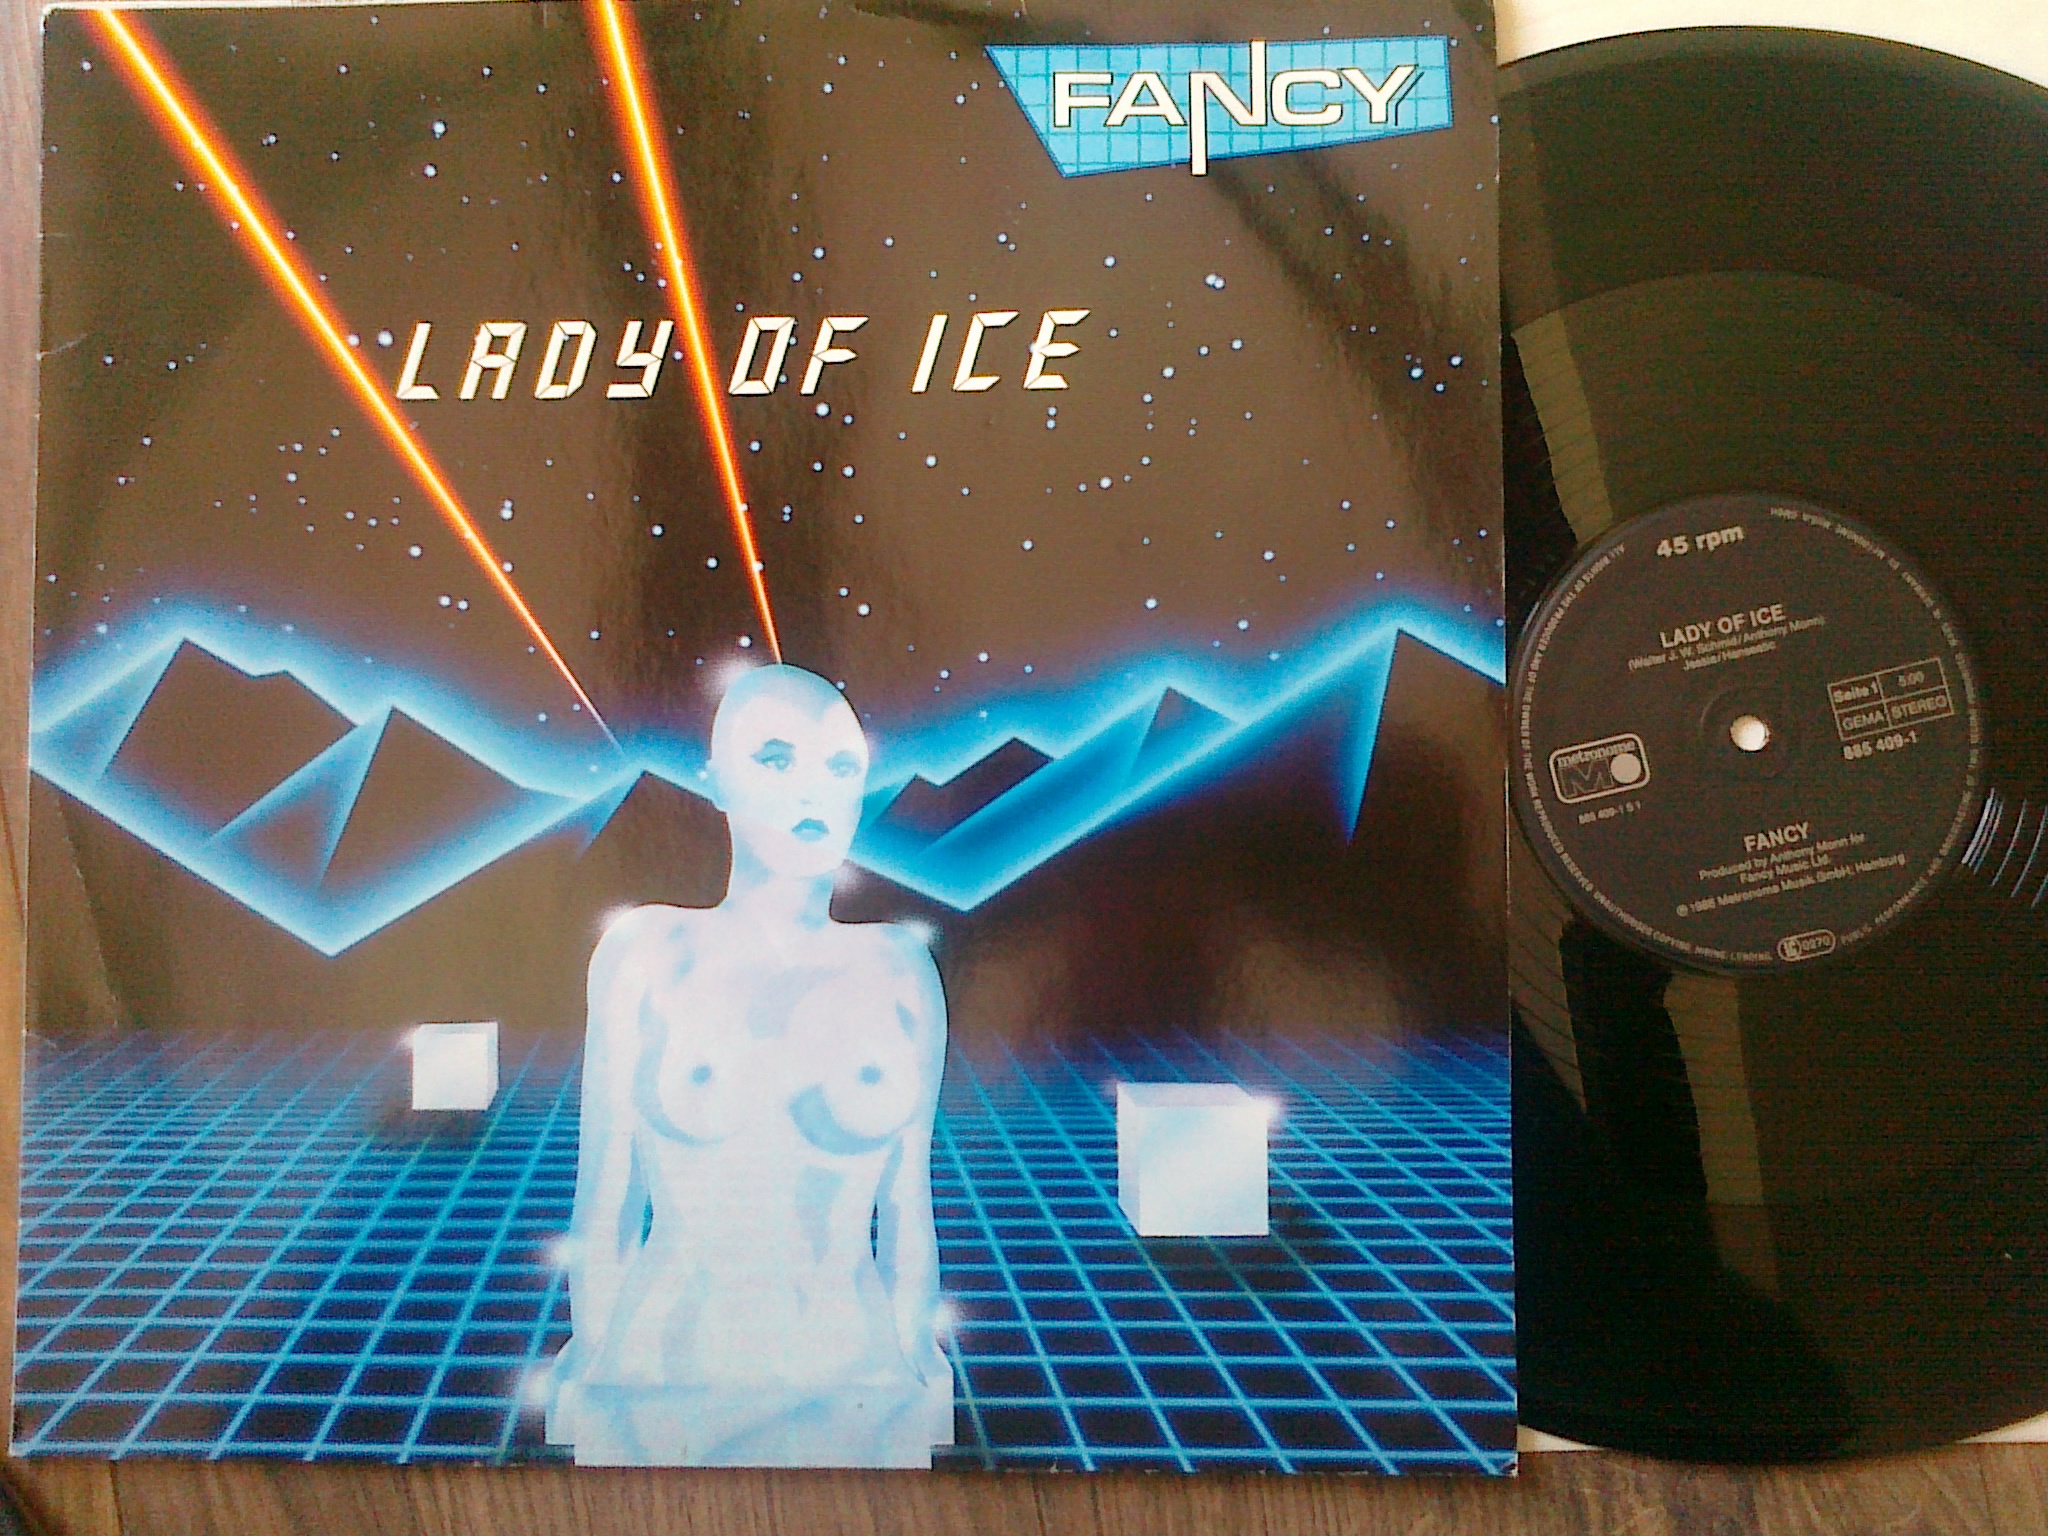 Fancy - Lady of ice